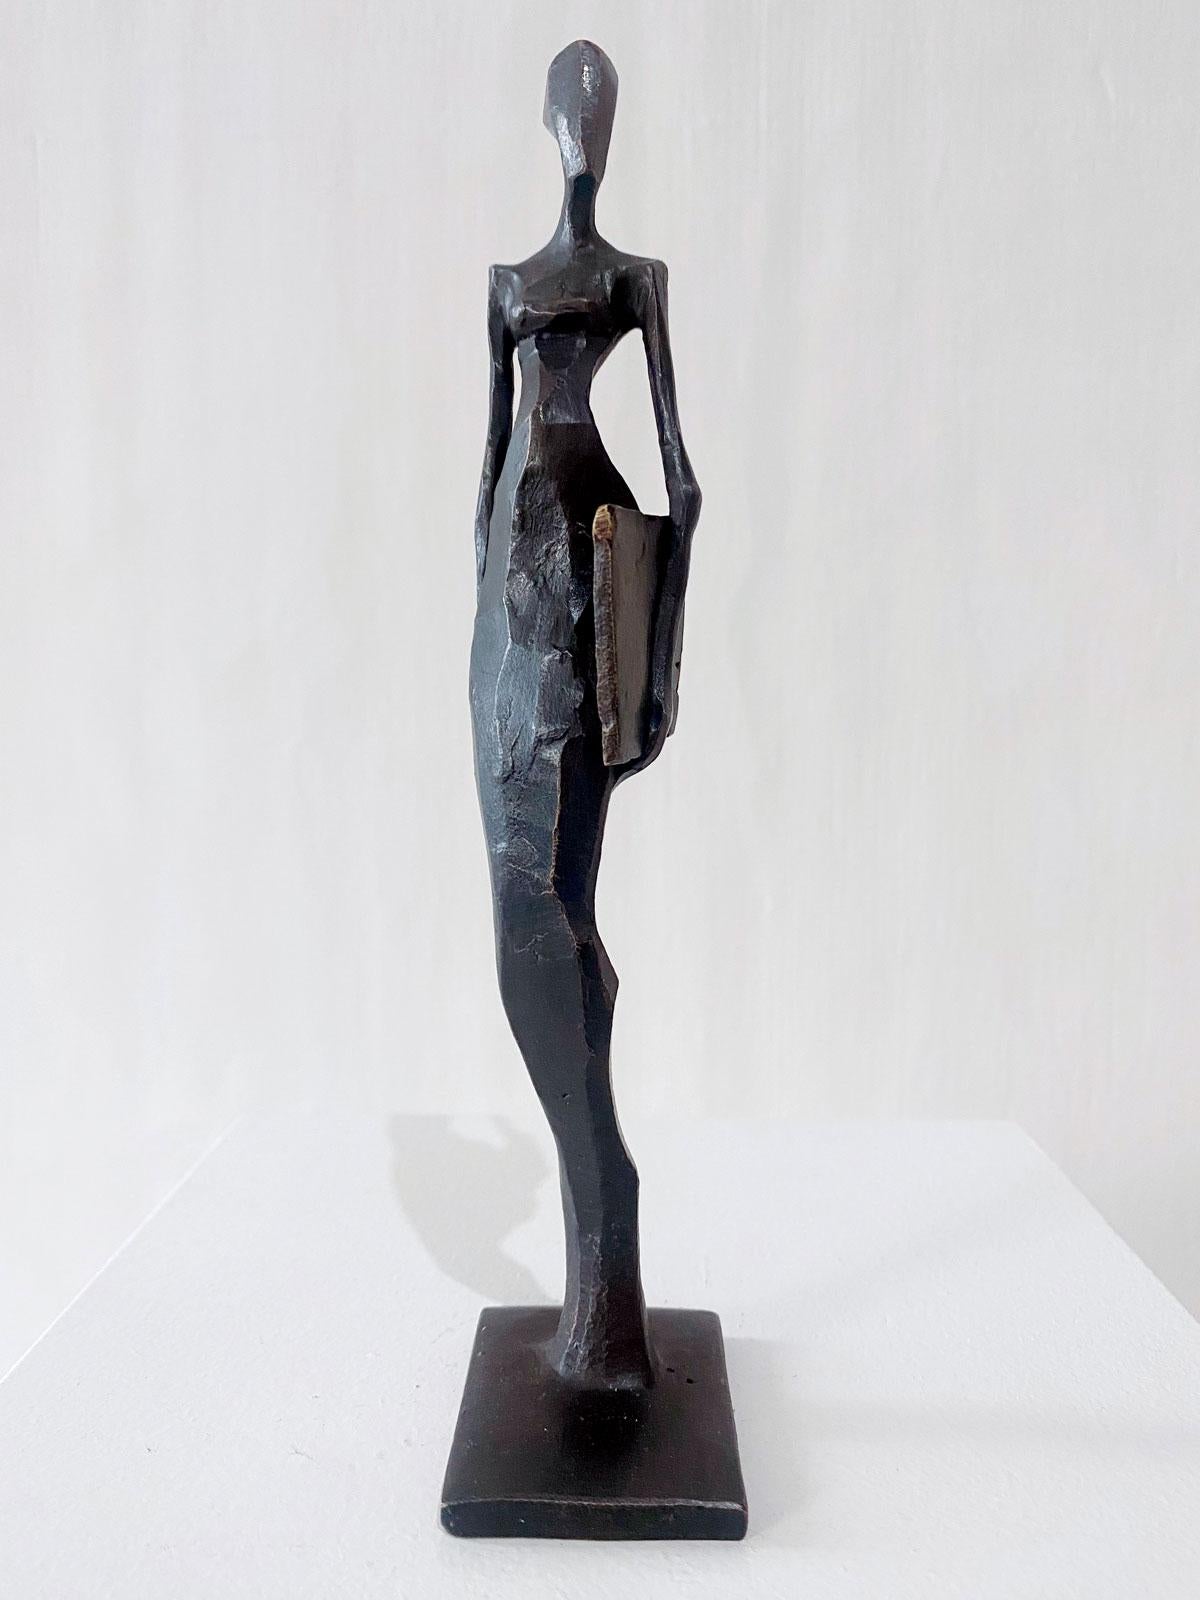 Frau mit Foto ist eine elegante figurative Bronzeskulptur von Nando Kallweit.

Der stilisierte ägyptisch angehauchte Kopf ist der modernen jugendlichen Haltung nachempfunden, verweist aber auch auf die Bedeutung des Erbes. Ein schönes Stück für sich